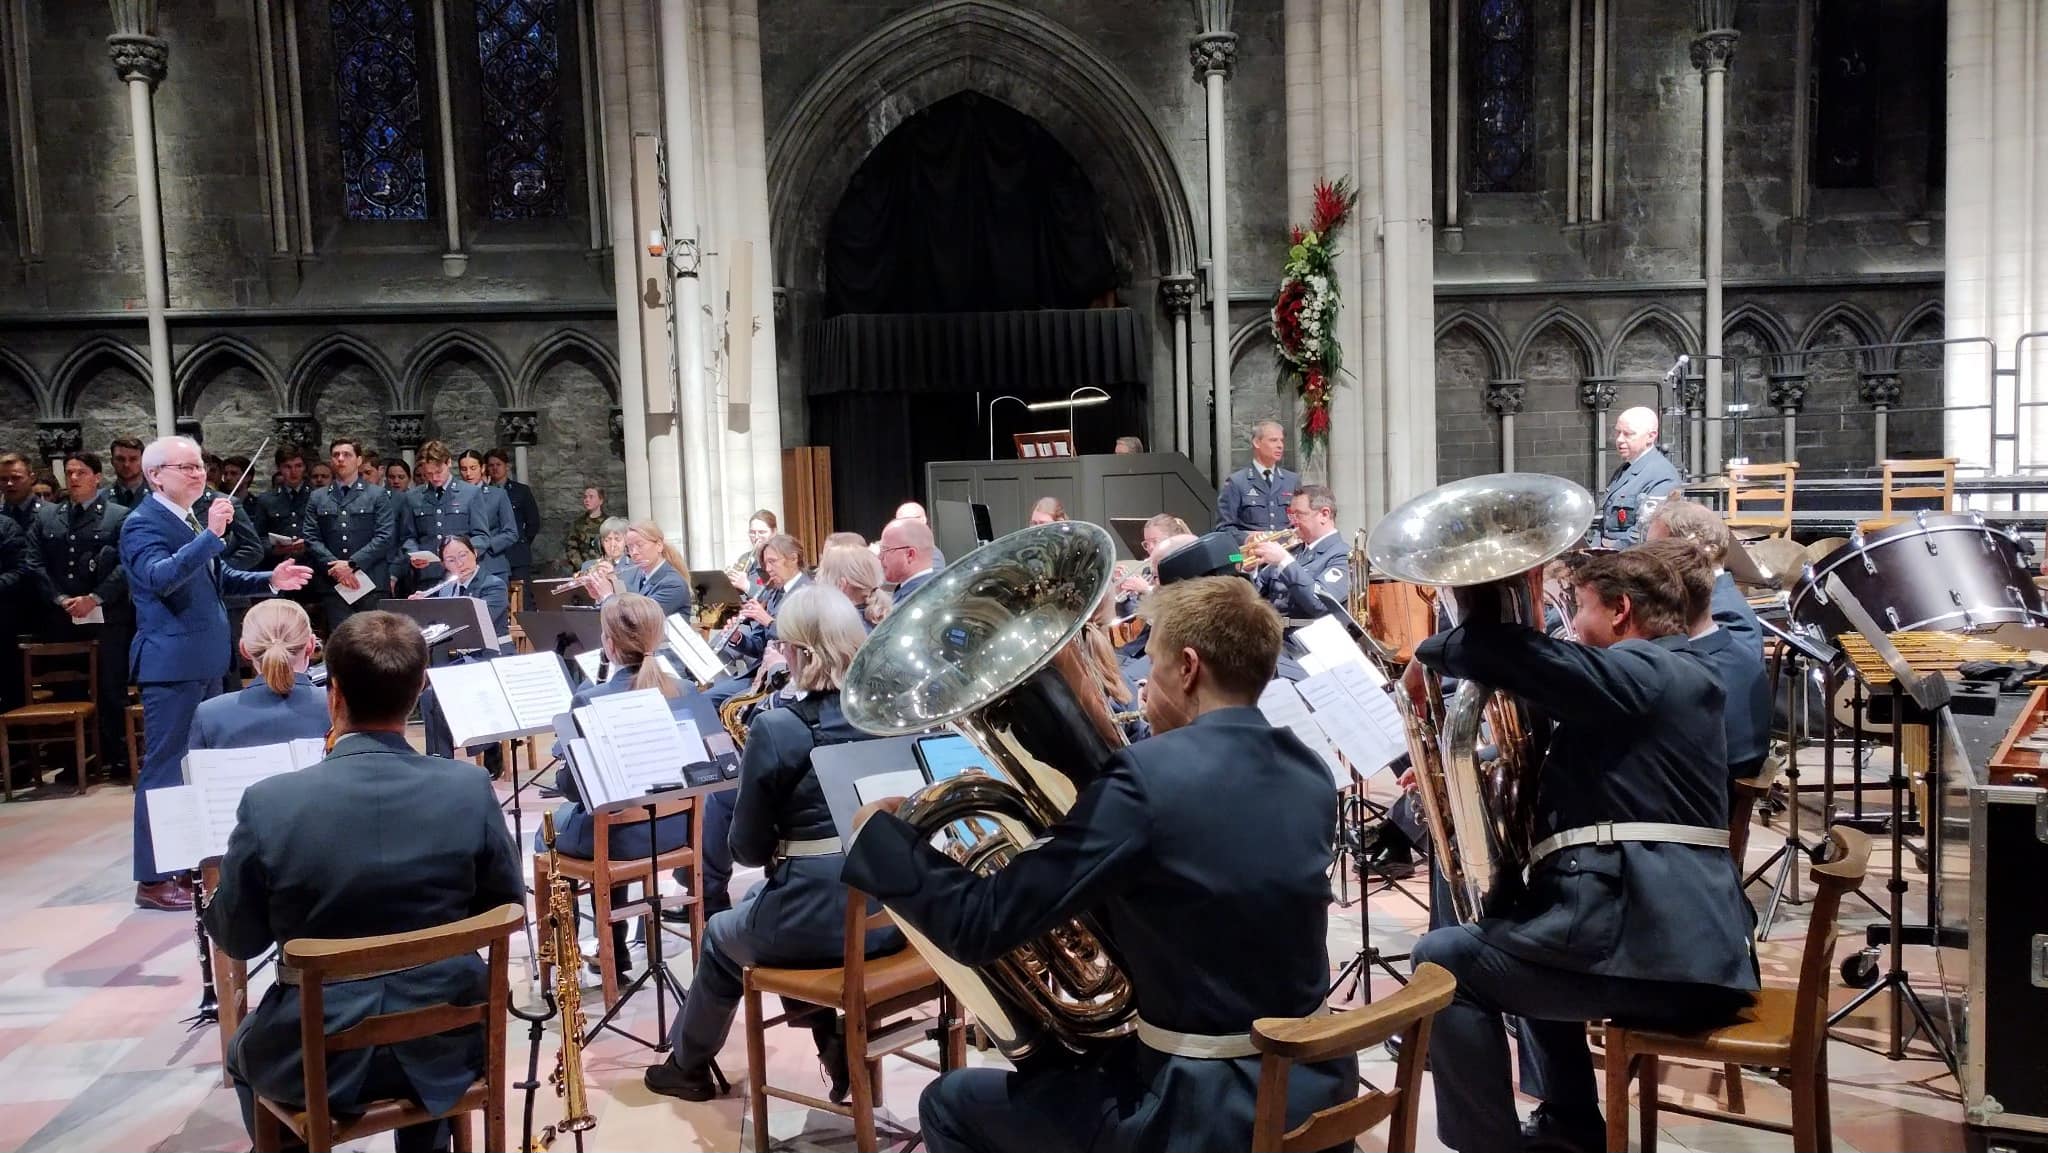 en gruppe mennesker som spiller instrumenter i en kirke.